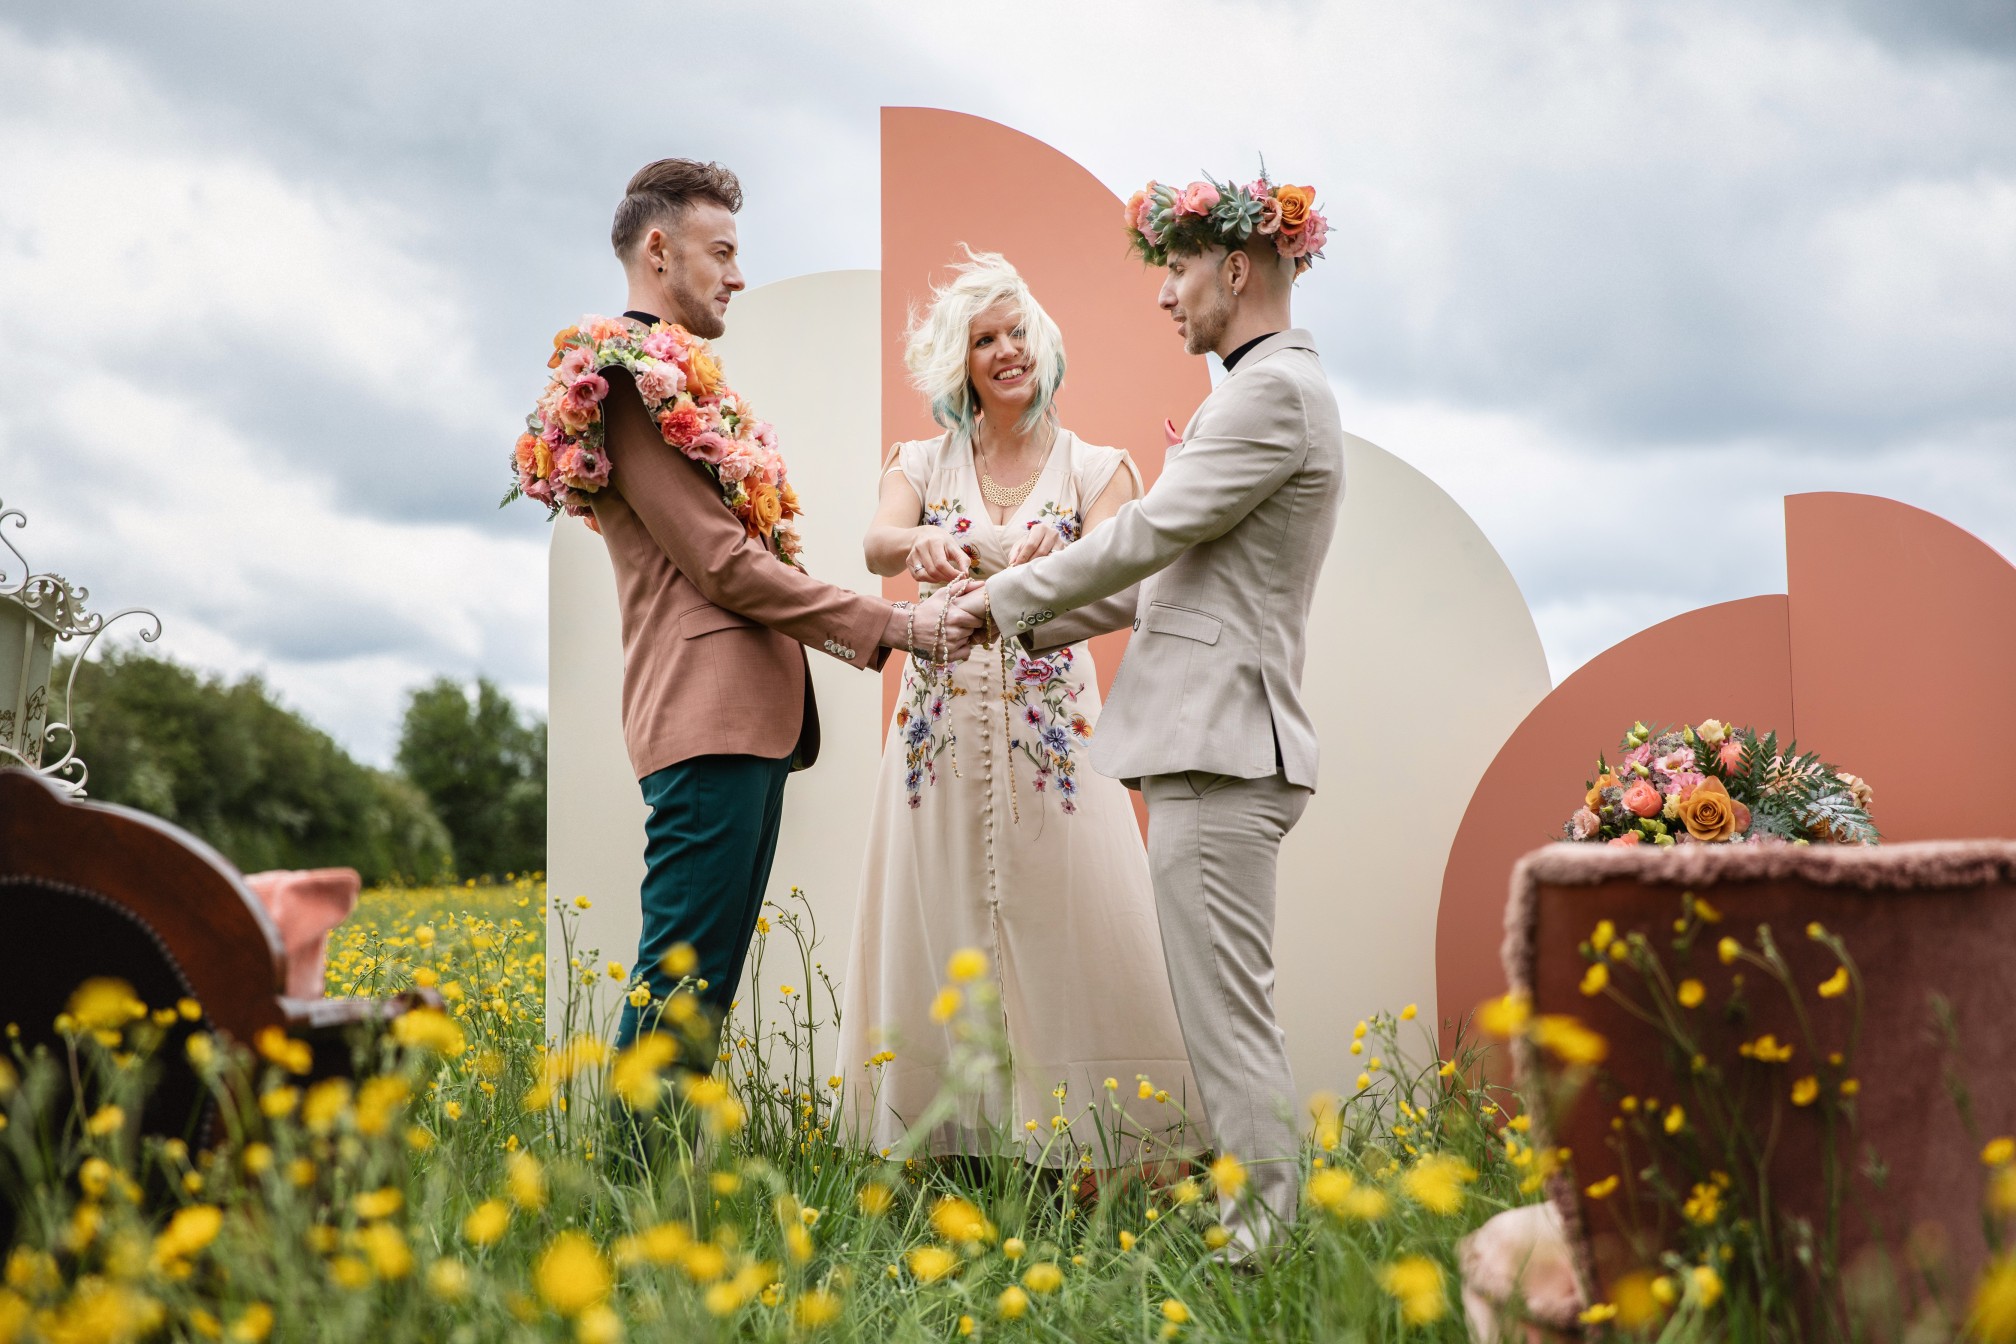 bohemian wedding ceremony - hand fasting wedding ceremony - unique wedding ceremony - wedding ceremony backdrop - gay wedding ideas